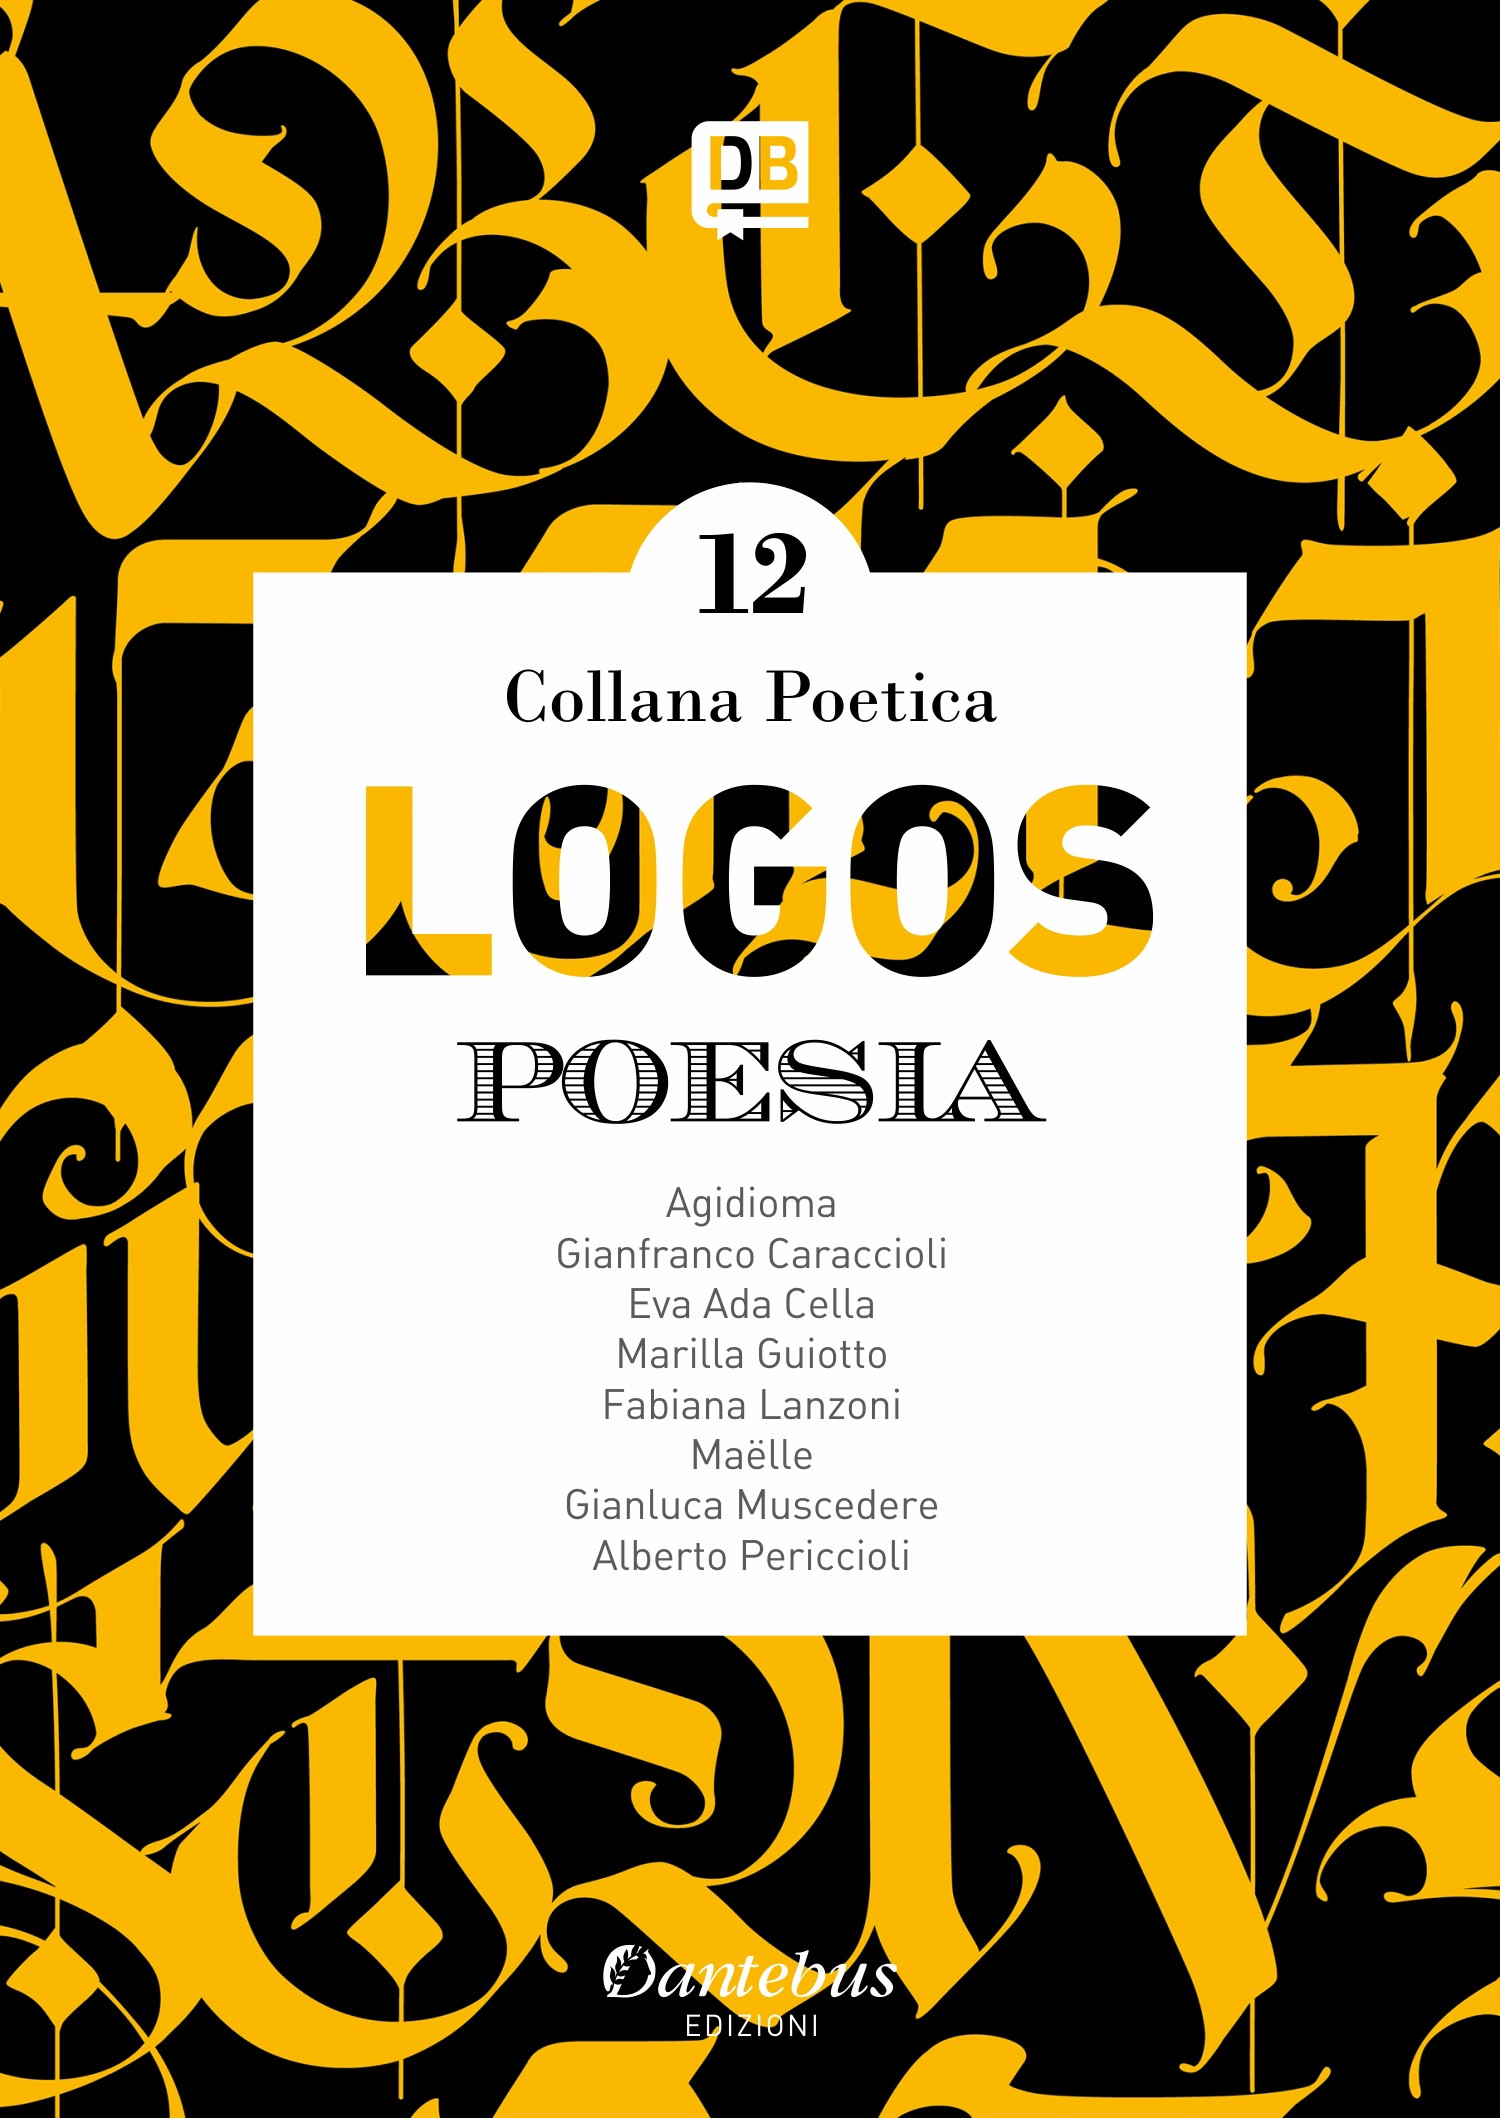 Collana Poetica Logos vol. 12 - Librerie.coop